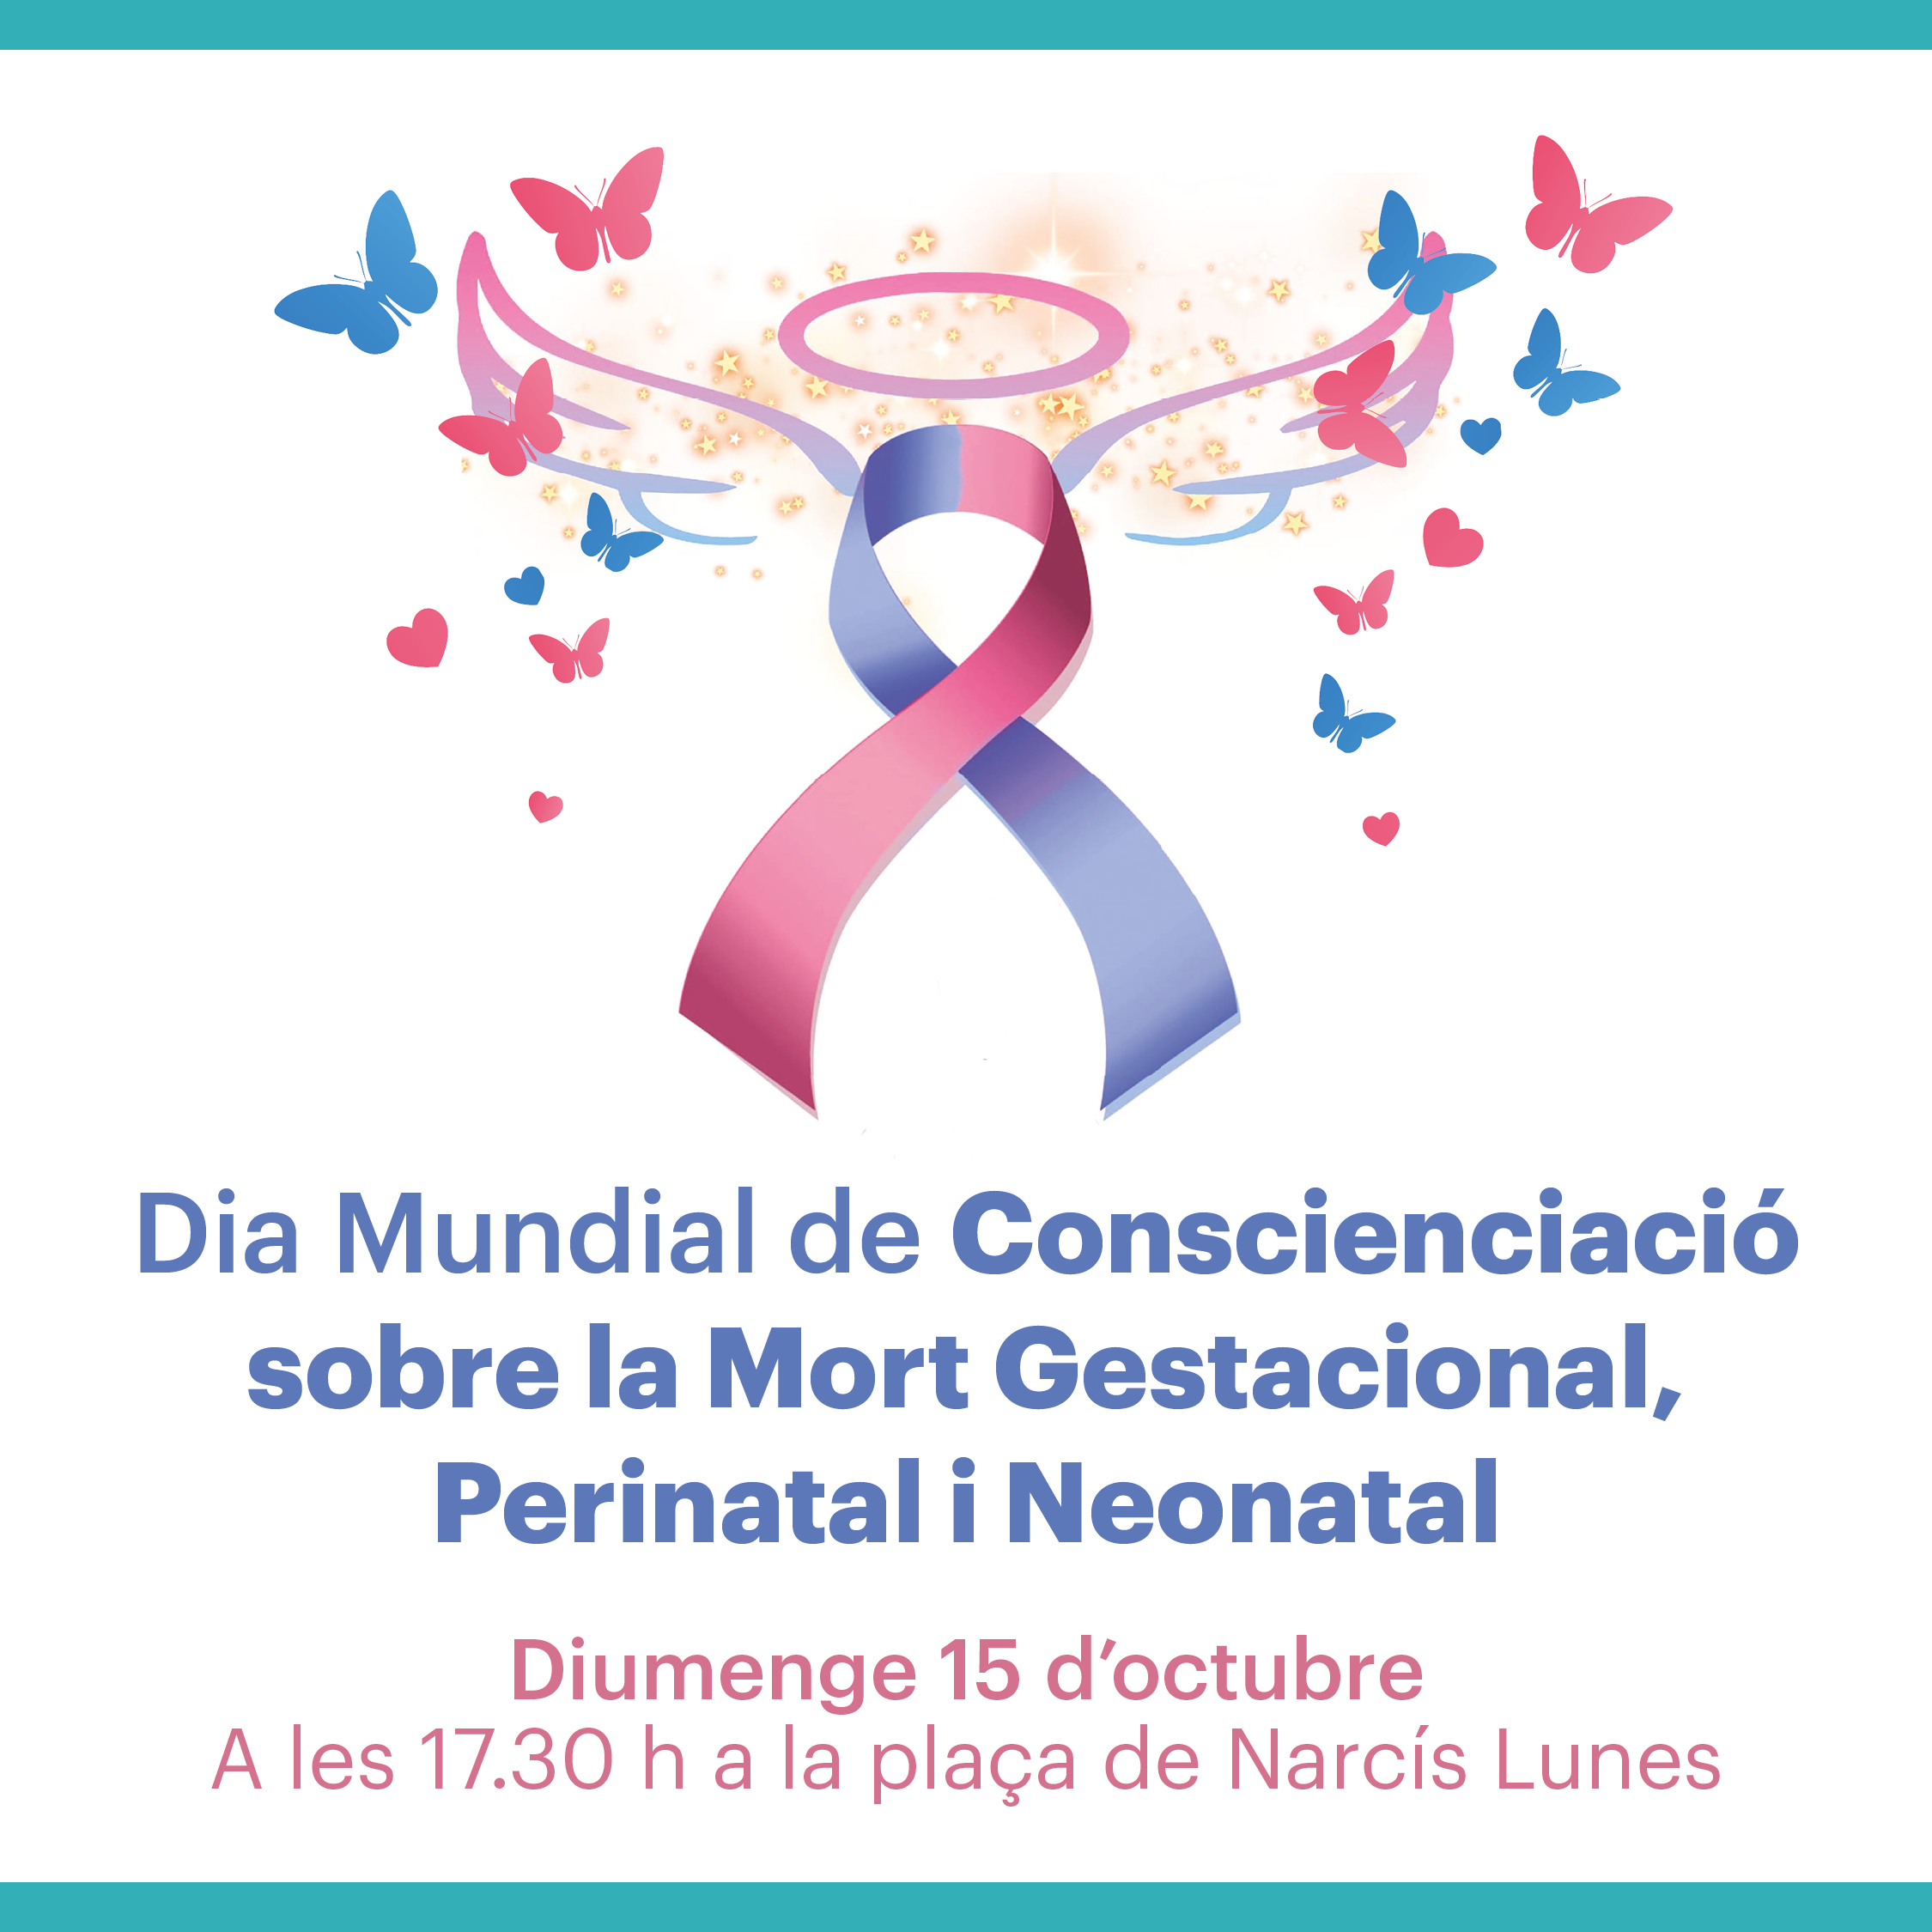 Dia Mundial de Conscienciació sobre la Mort Gestacional, Perinatal i Neonatal